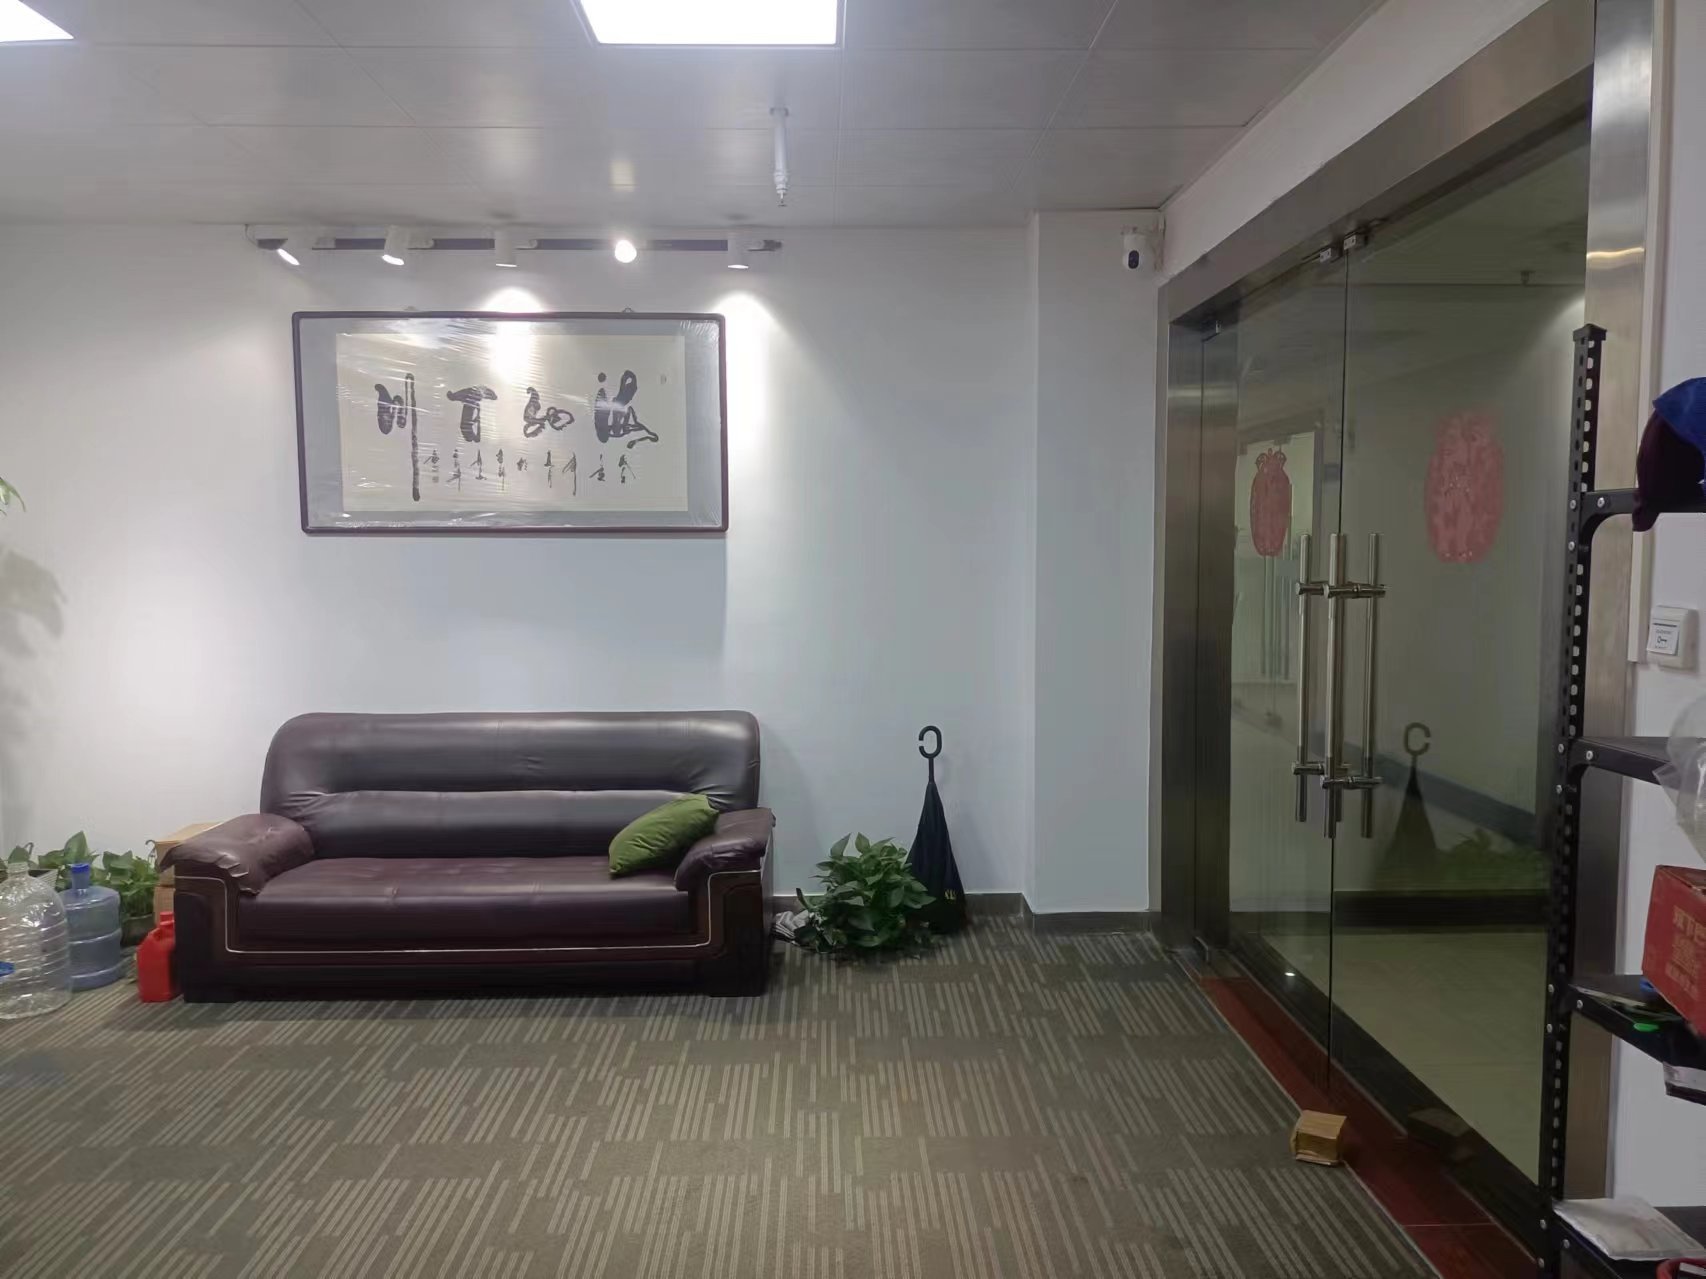 番禺天安科技园现成装修390方办公室出租。